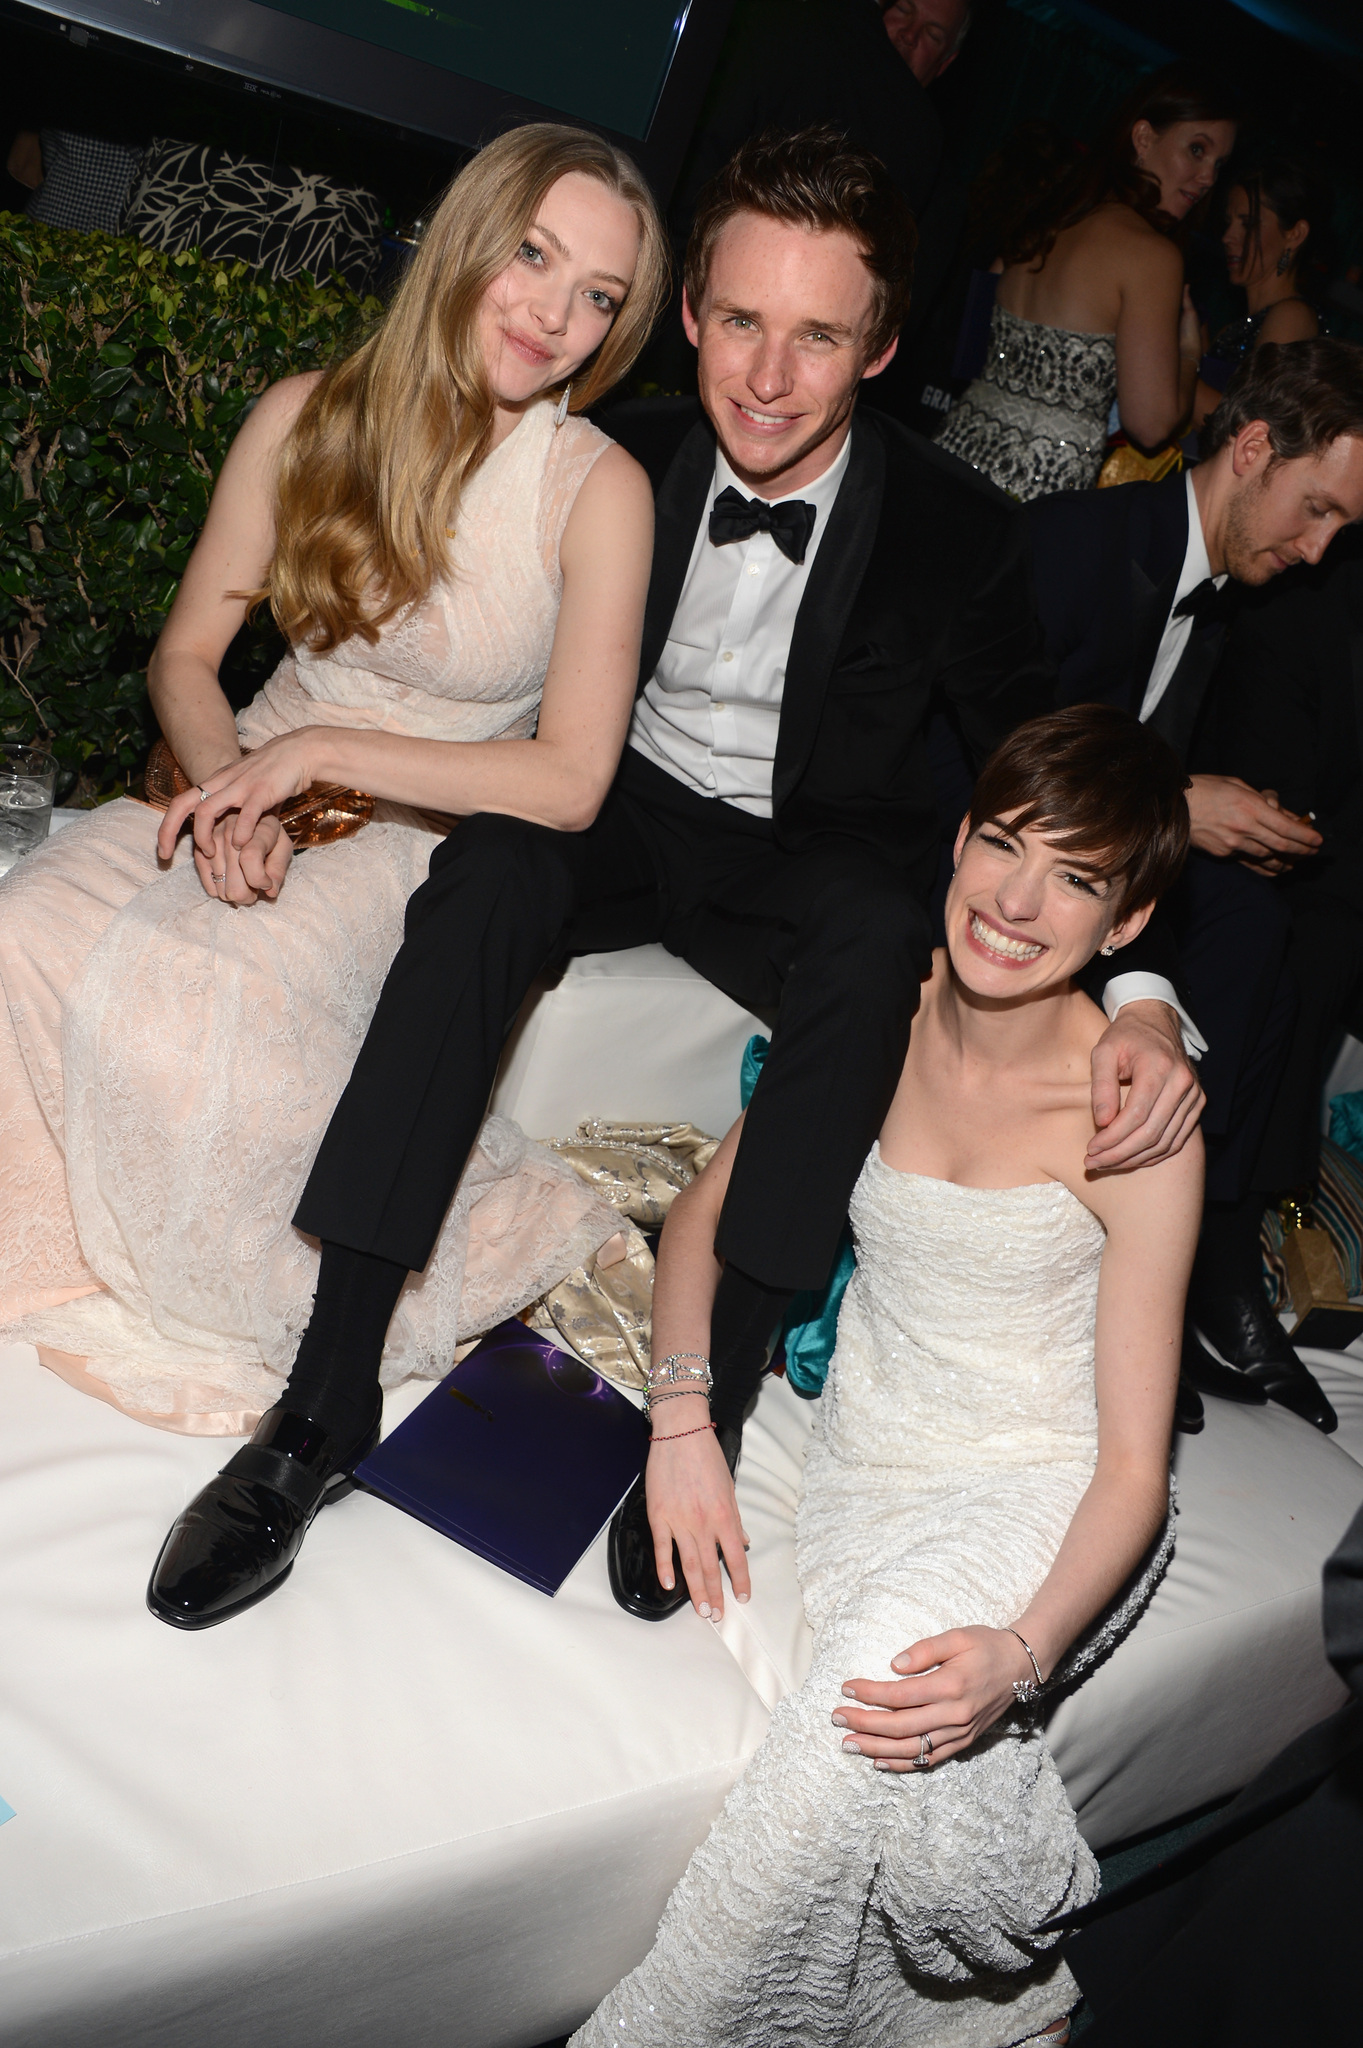 Anne Hathaway, Amanda Seyfried and Eddie Redmayne